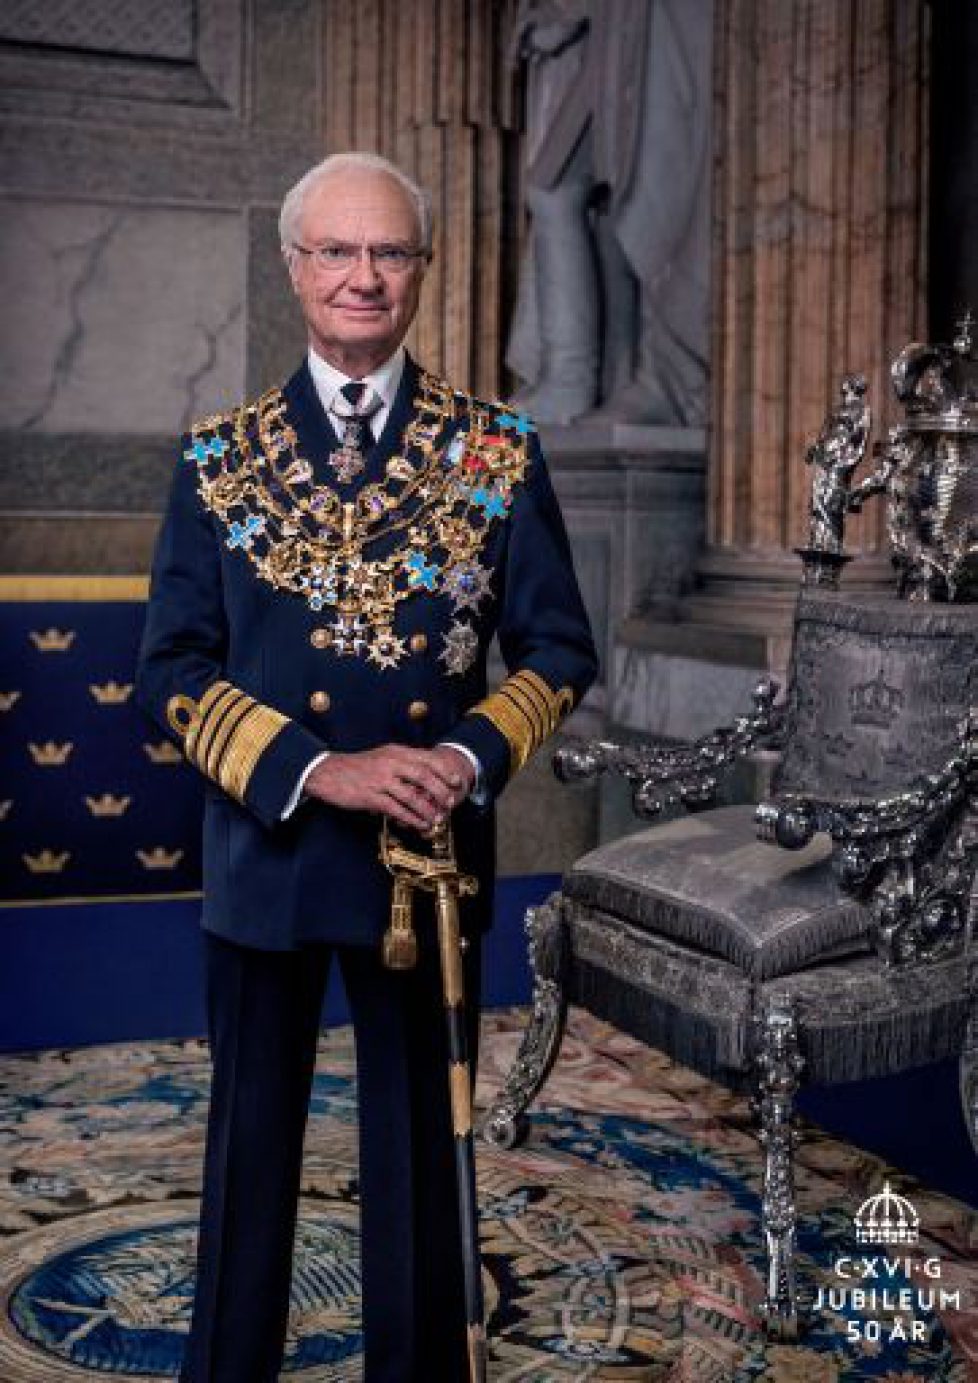 HM The King's jubilee portrait